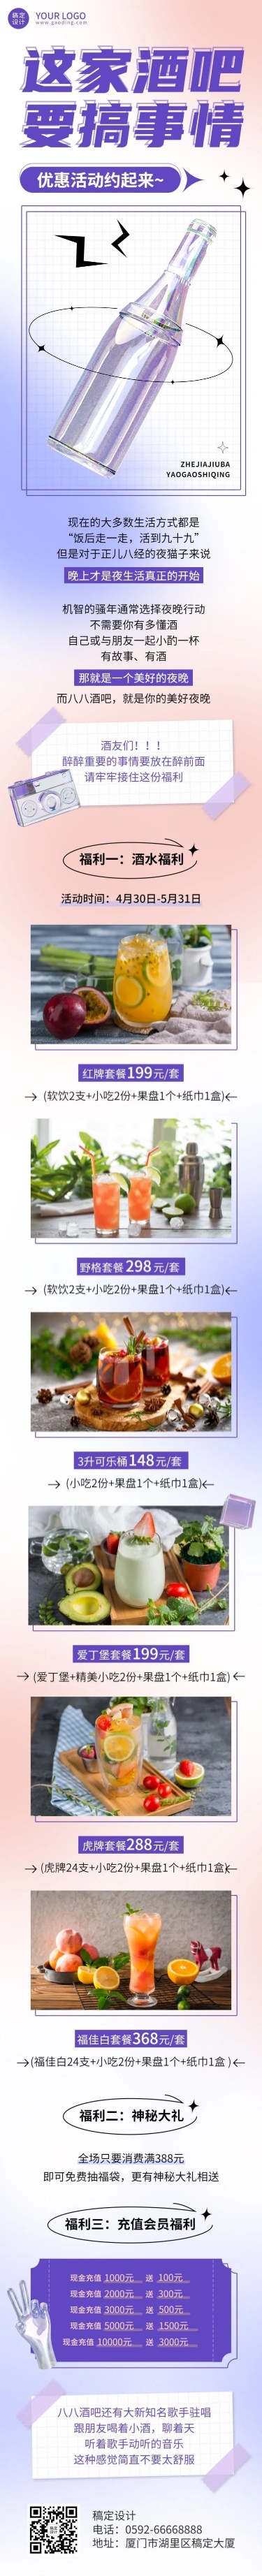 餐饮酒吧营销优惠活动文章长图